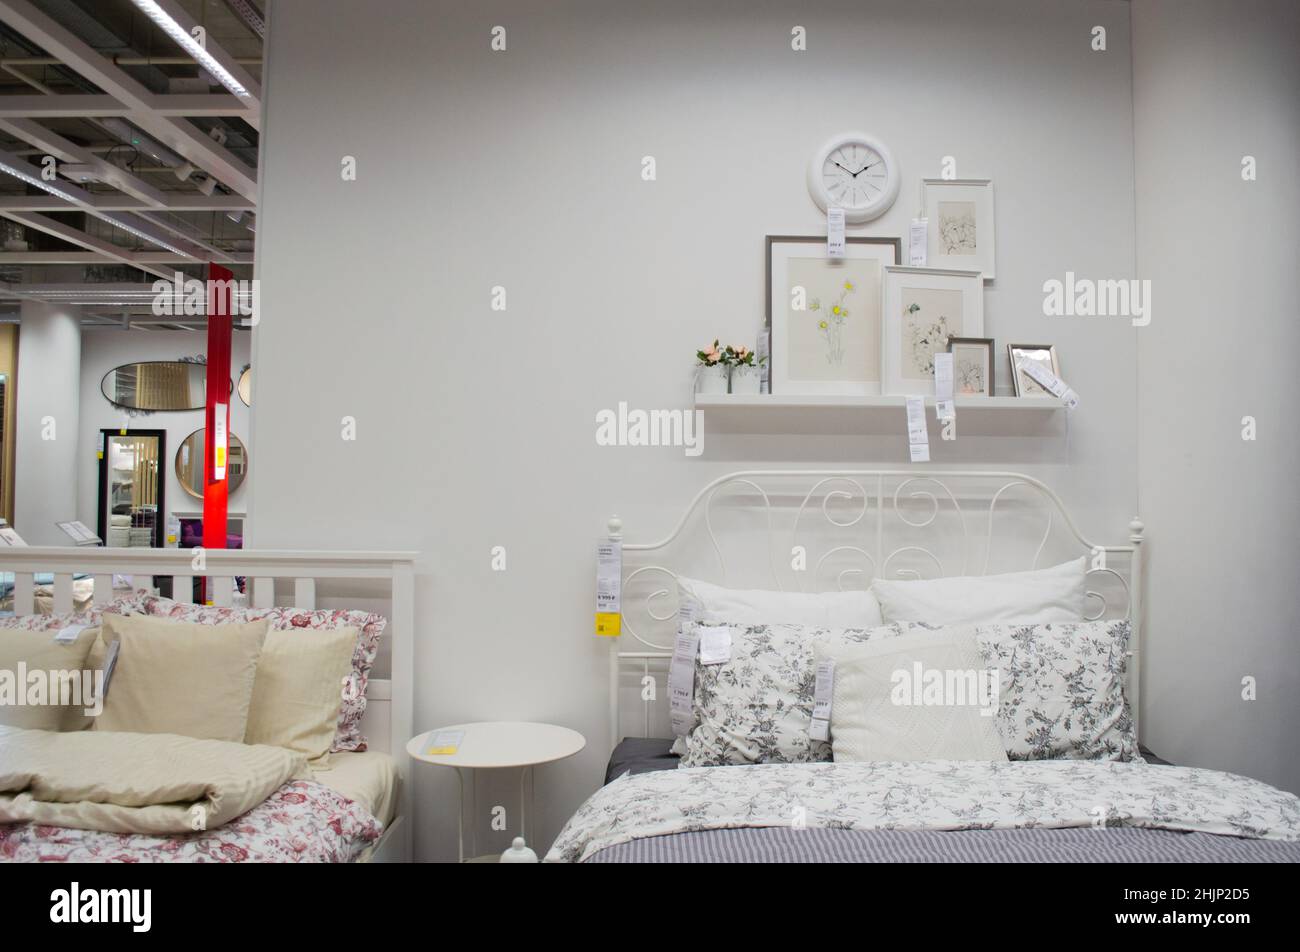 Monumental cómo utilizar Adjunto archivo Moscú, Rusia, septiembre de 2019: Interior del dormitorio de la tienda IKEA:  Cama de color blanco, ropa de cama, marcos de fotos y reloj de pared.  Tienda de muebles Fotografía de stock -